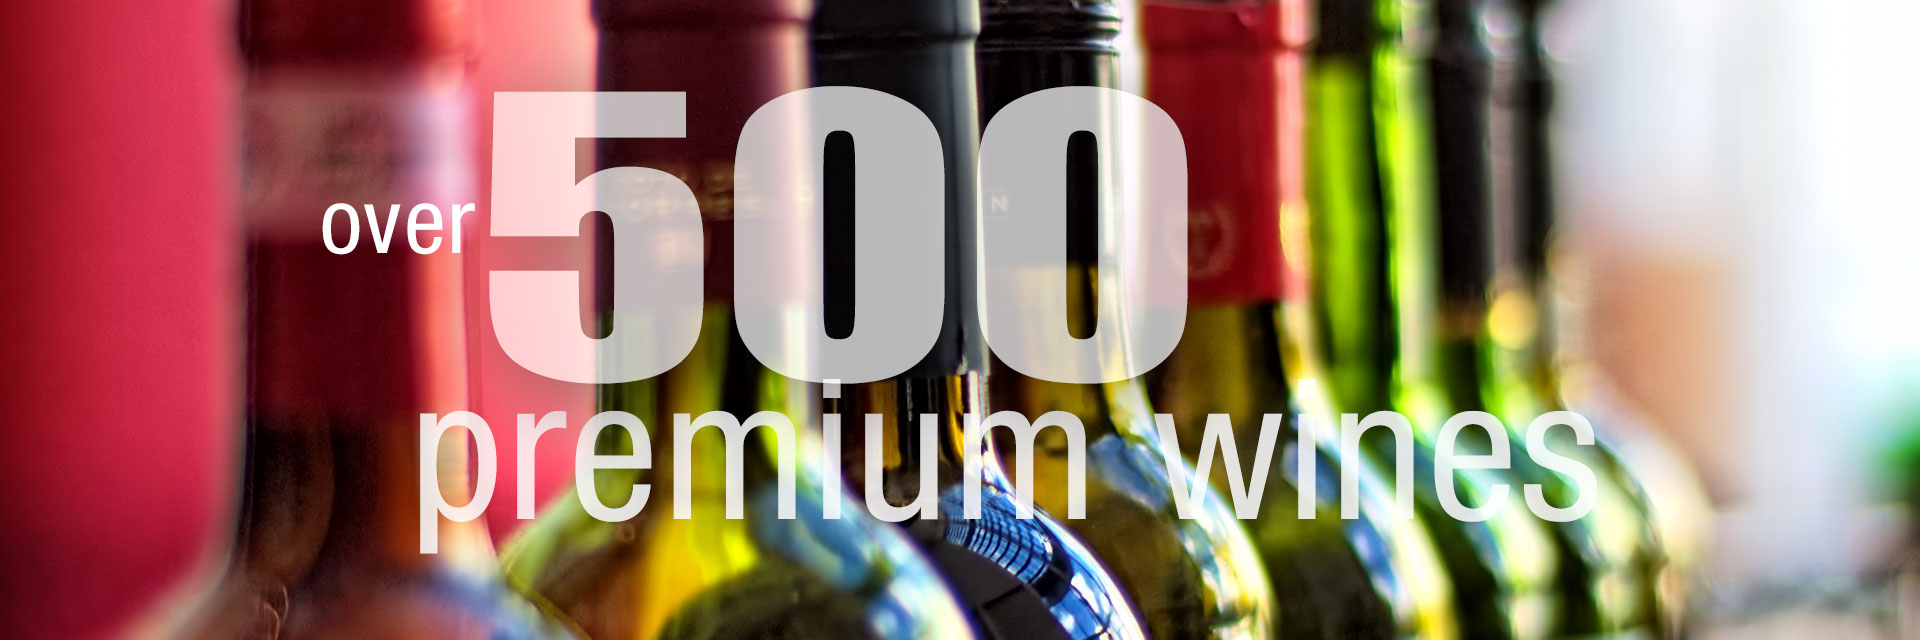 Over 500 Premium Wines